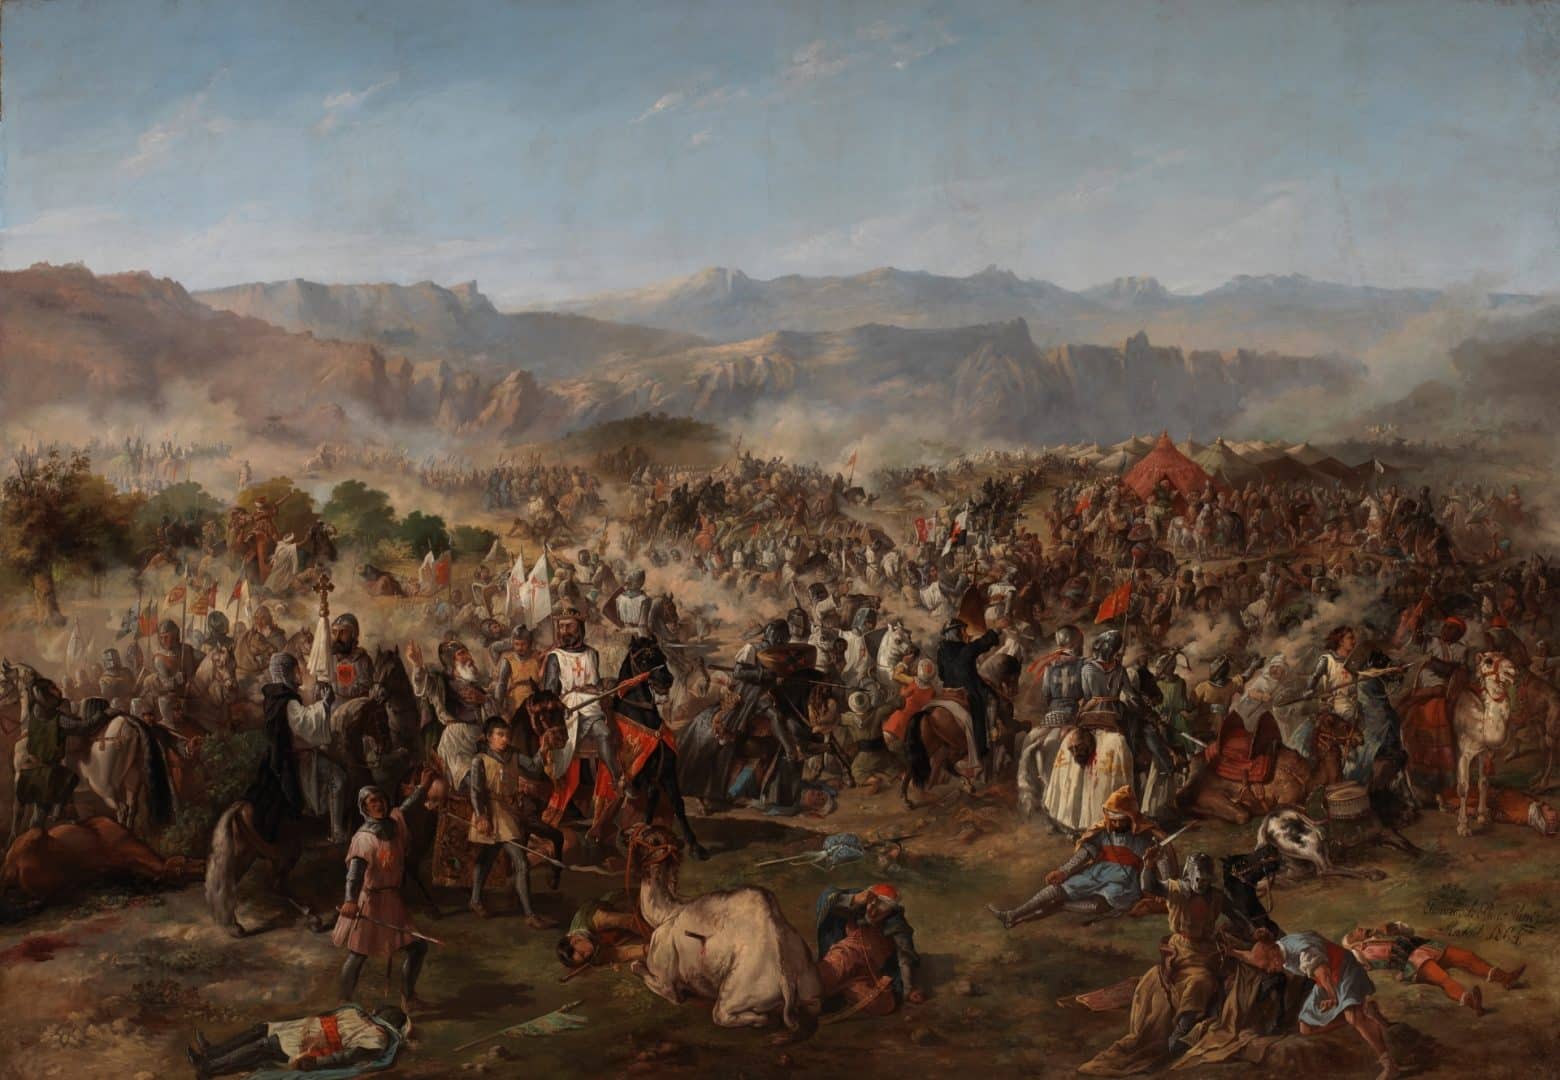 A Batalha de Navas de Tolosa expulsou os mouros da Península Ibérica